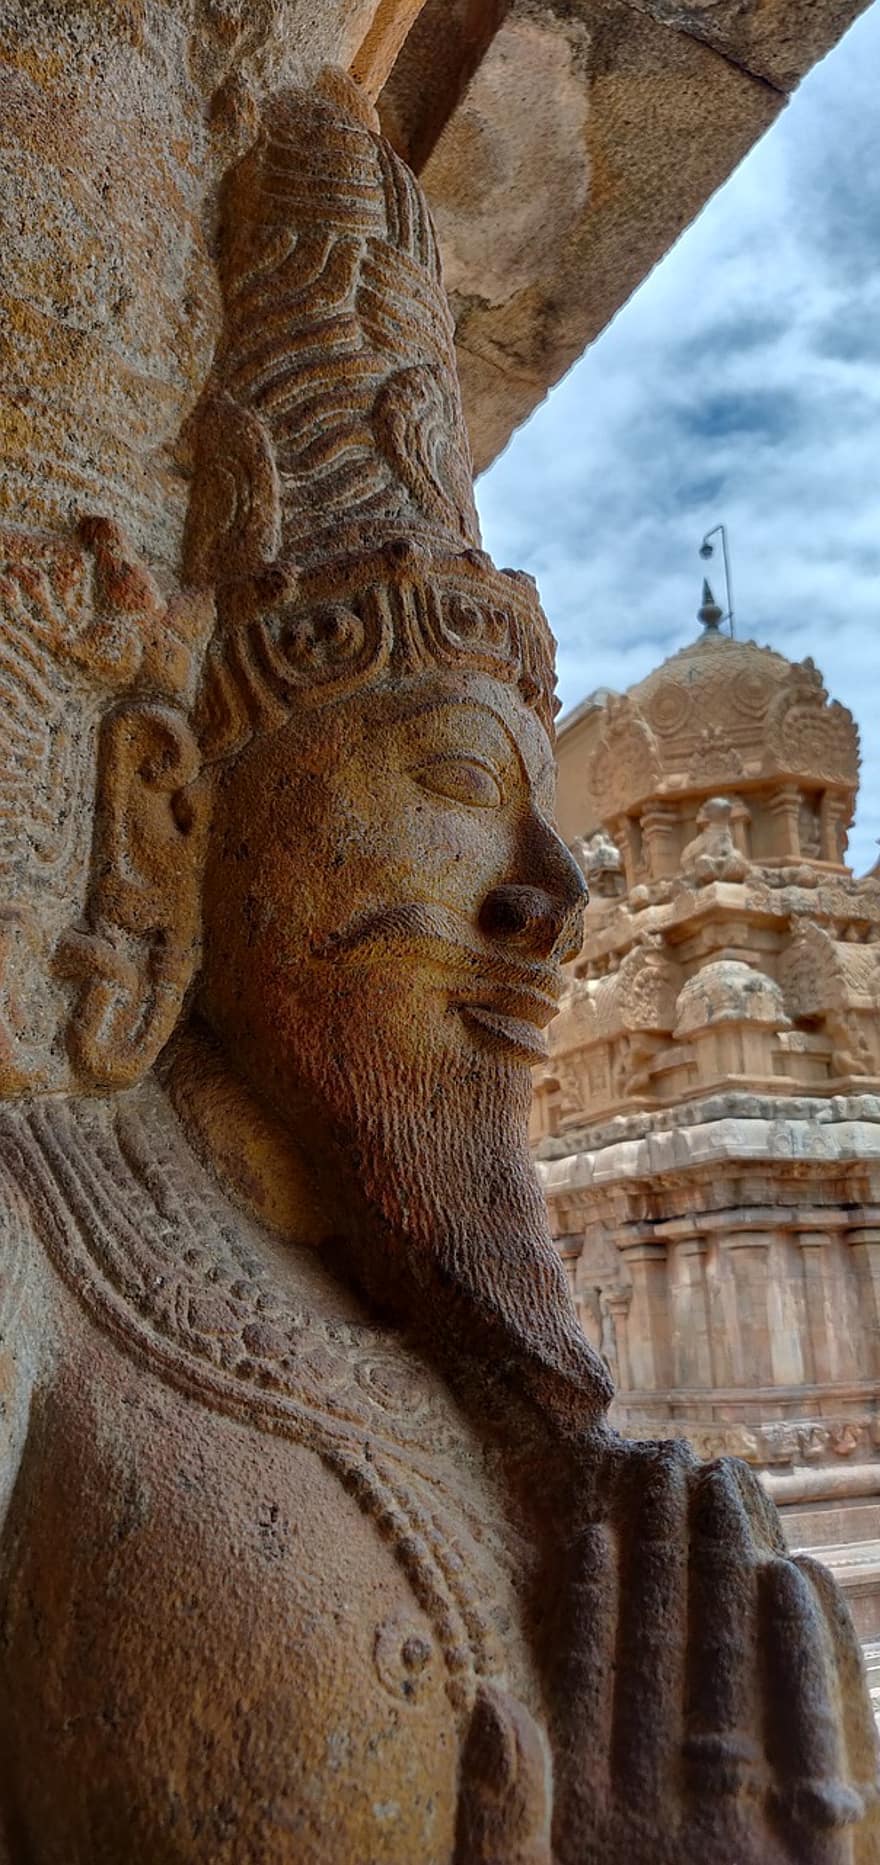 architektura, rzeźba, statua, Indie, tamilnadu, historyczny, świątynia, Shiva, duża świątynia, thanjavur, kultury